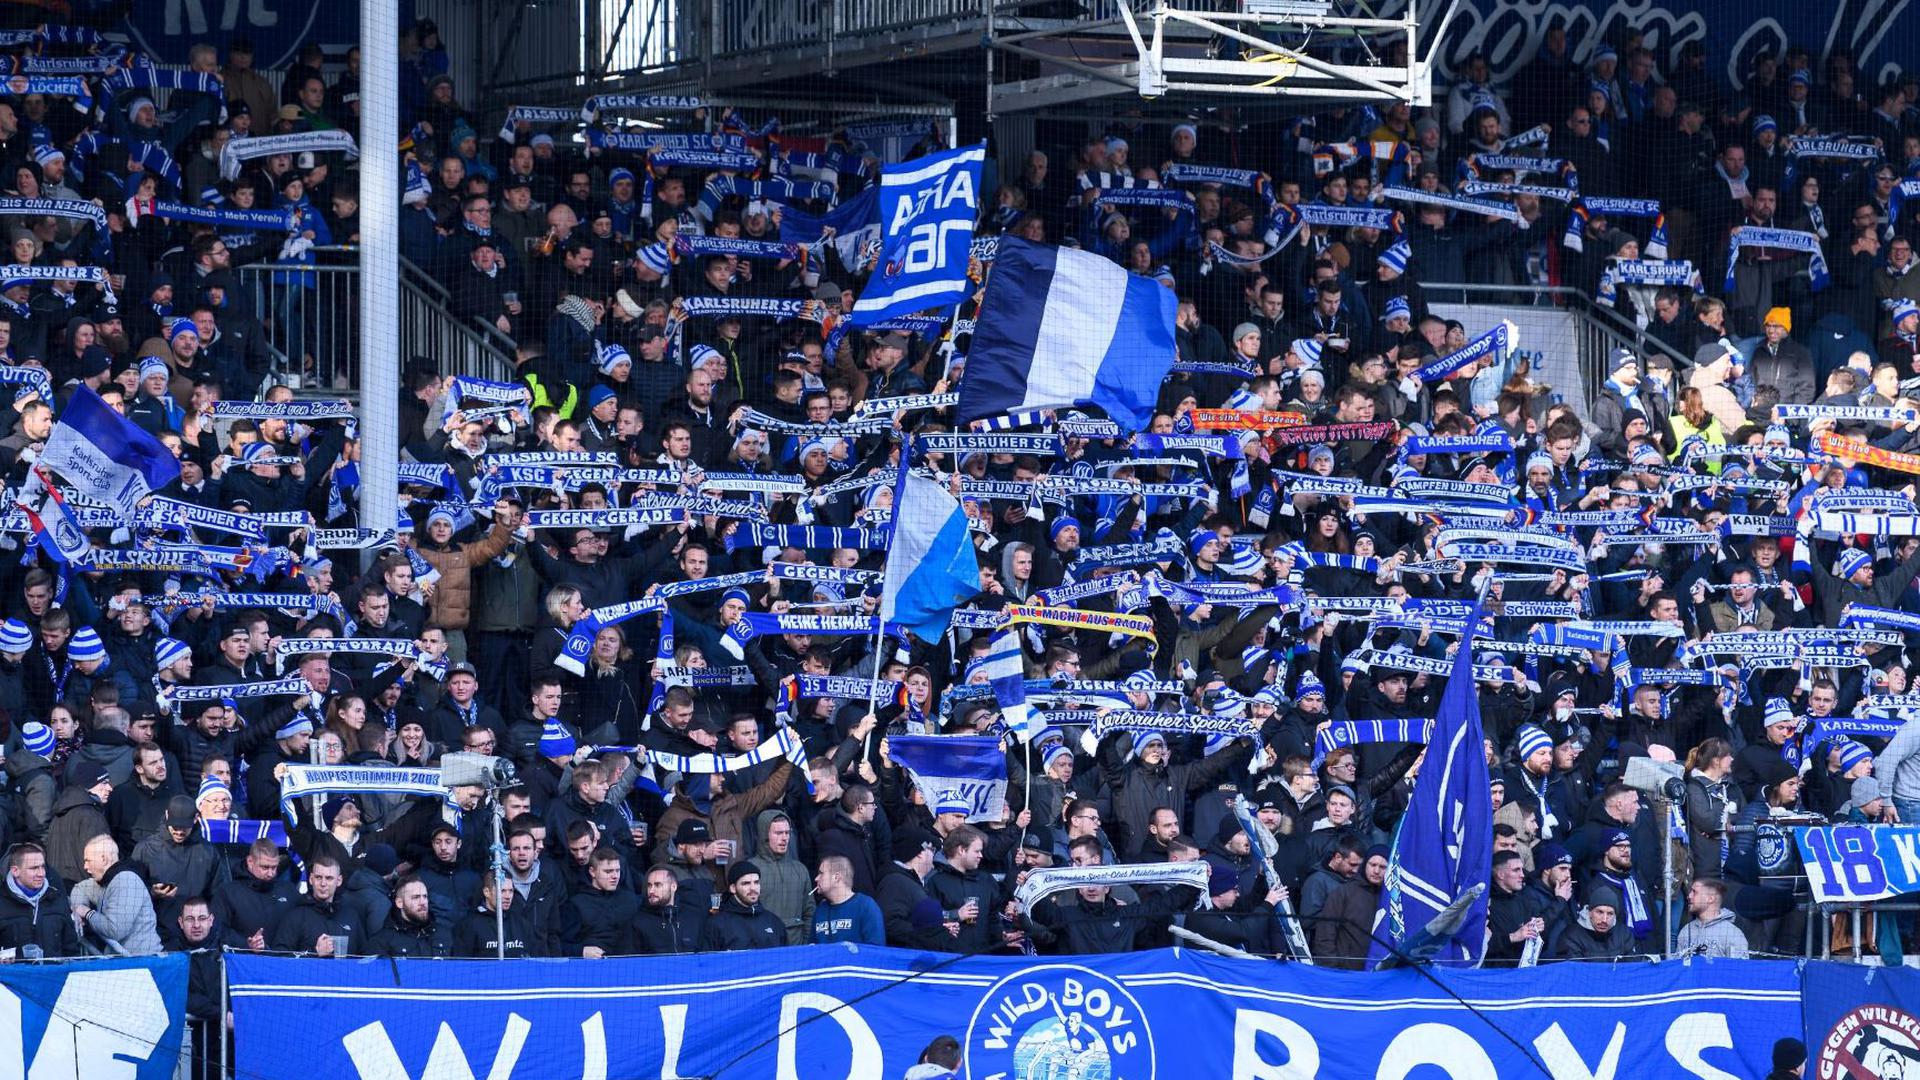 Die prekäre finanzielle Lage des Clubs und die Insolvenzpläne beschäftigten auch die Fans des Karlsruher SC.